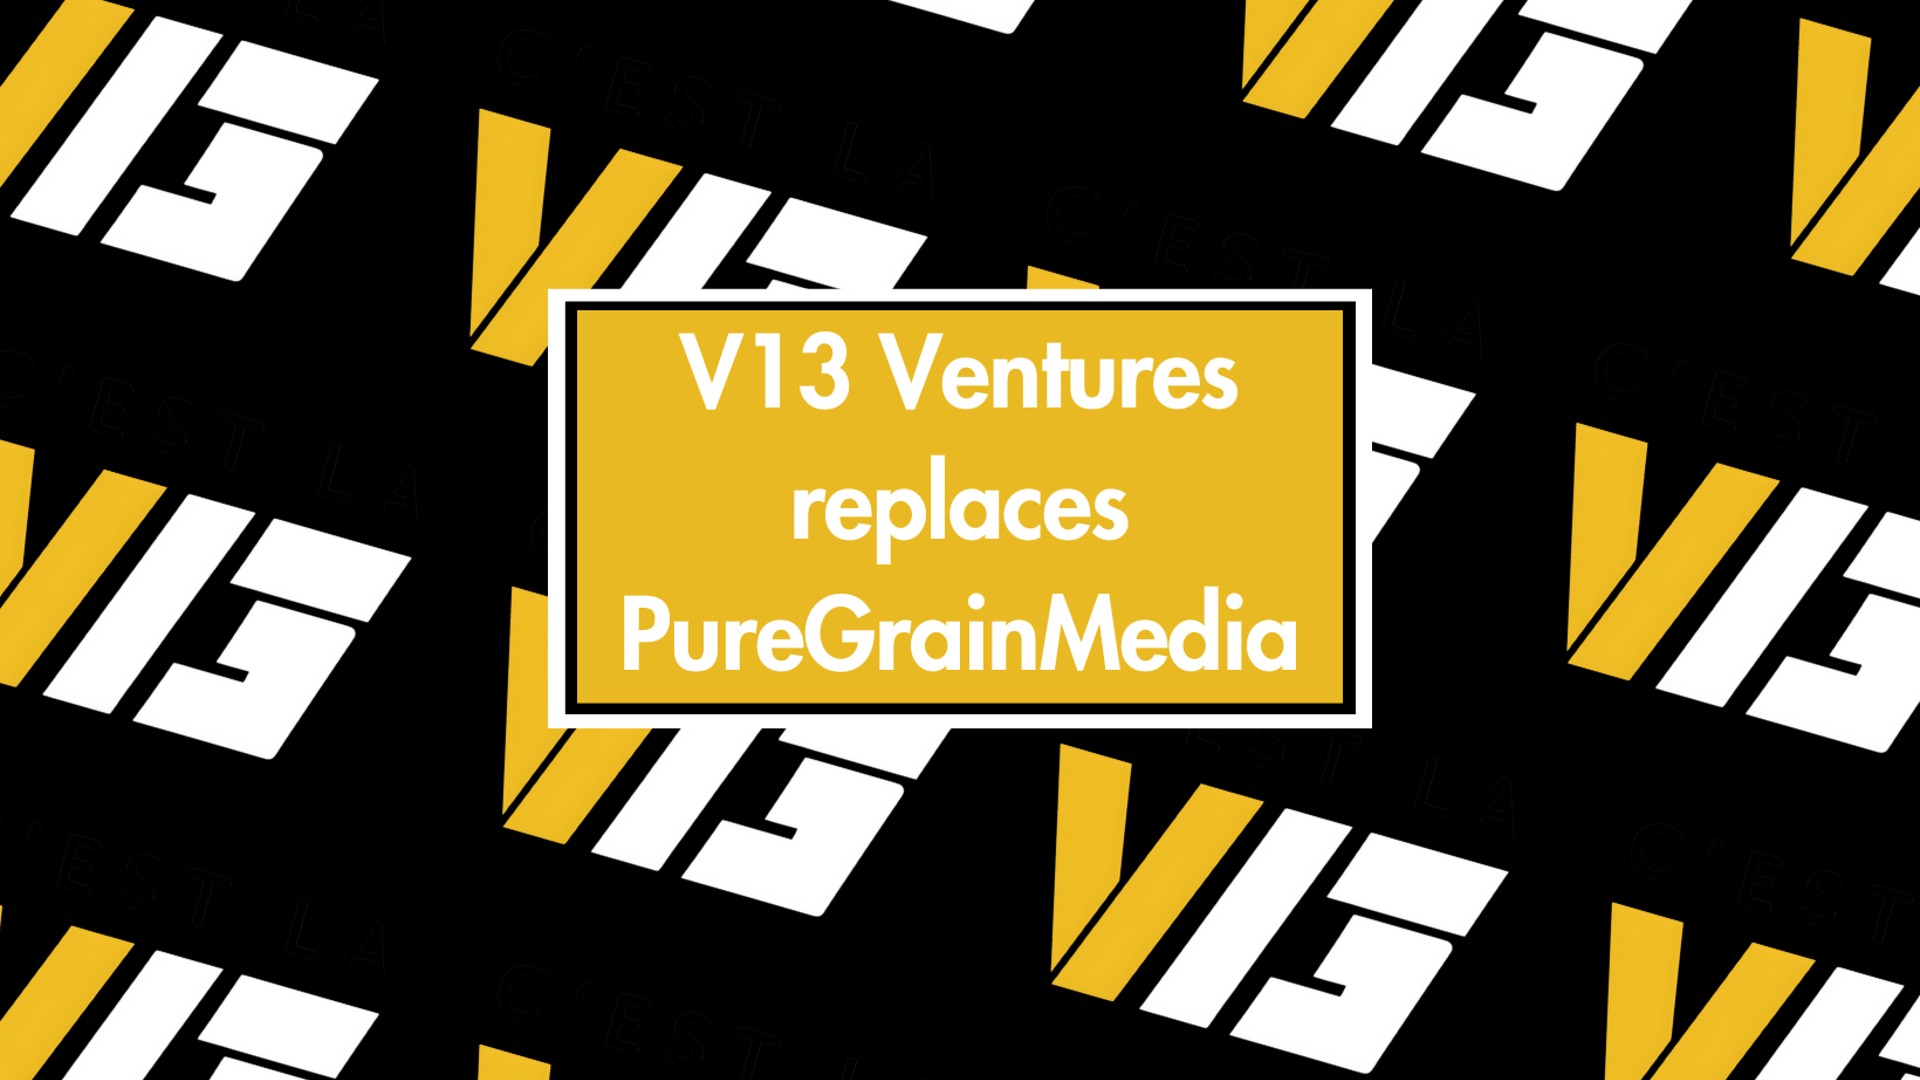 V13 Ventures Press Release Image